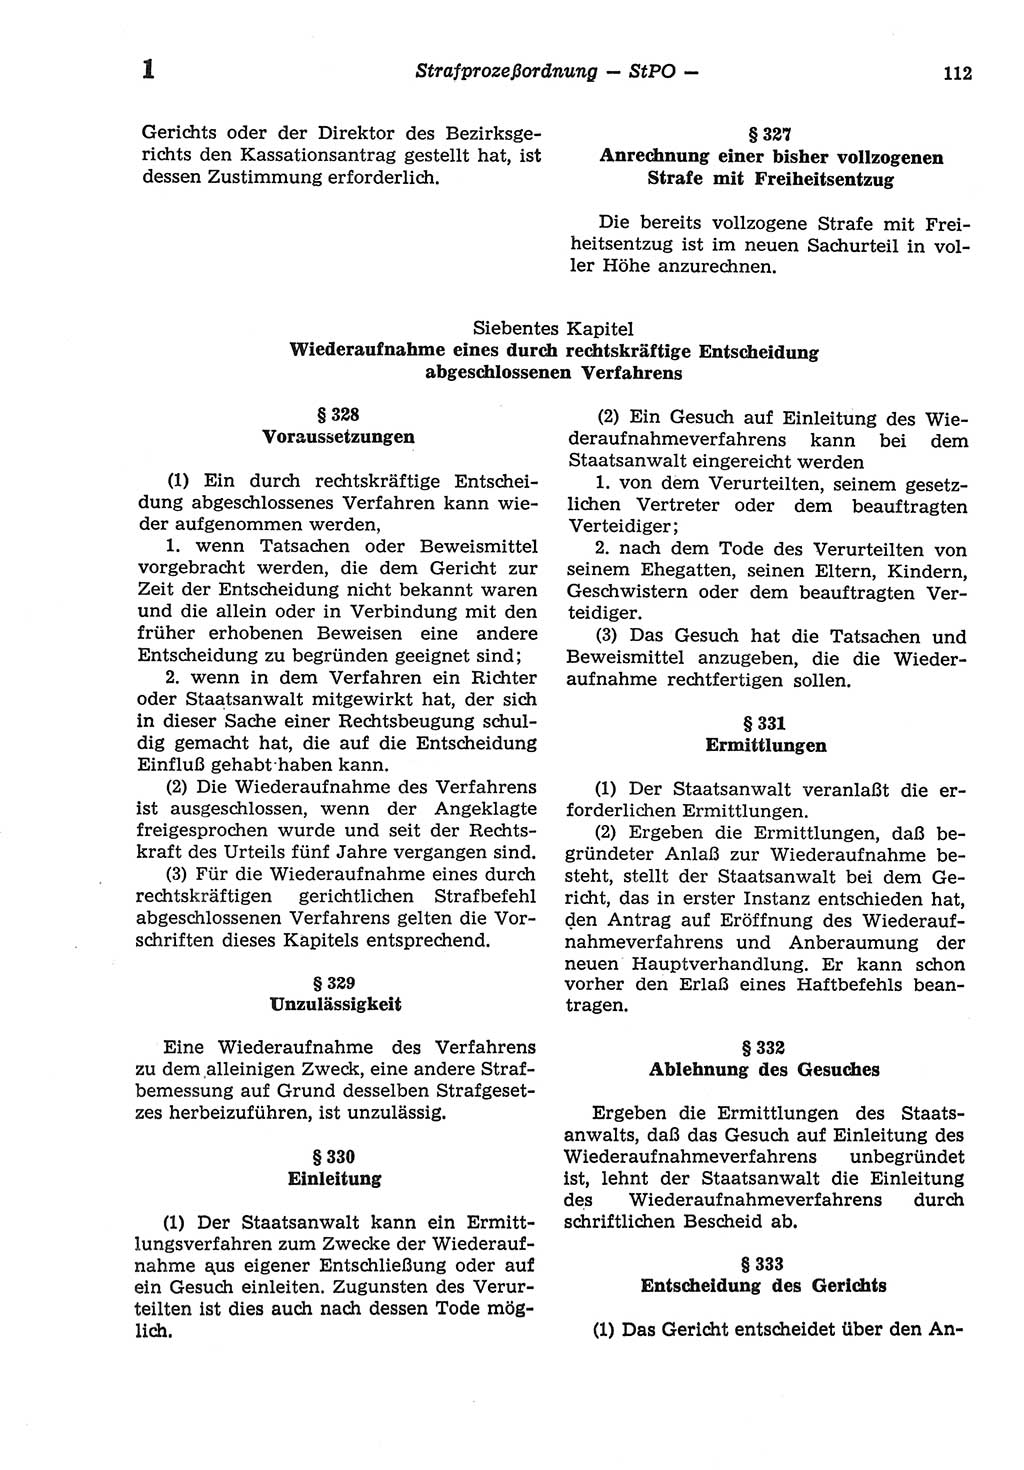 Strafprozeßordnung (StPO) der Deutschen Demokratischen Republik (DDR) sowie angrenzende Gesetze und Bestimmungen 1977, Seite 112 (StPO DDR Ges. Best. 1977, S. 112)